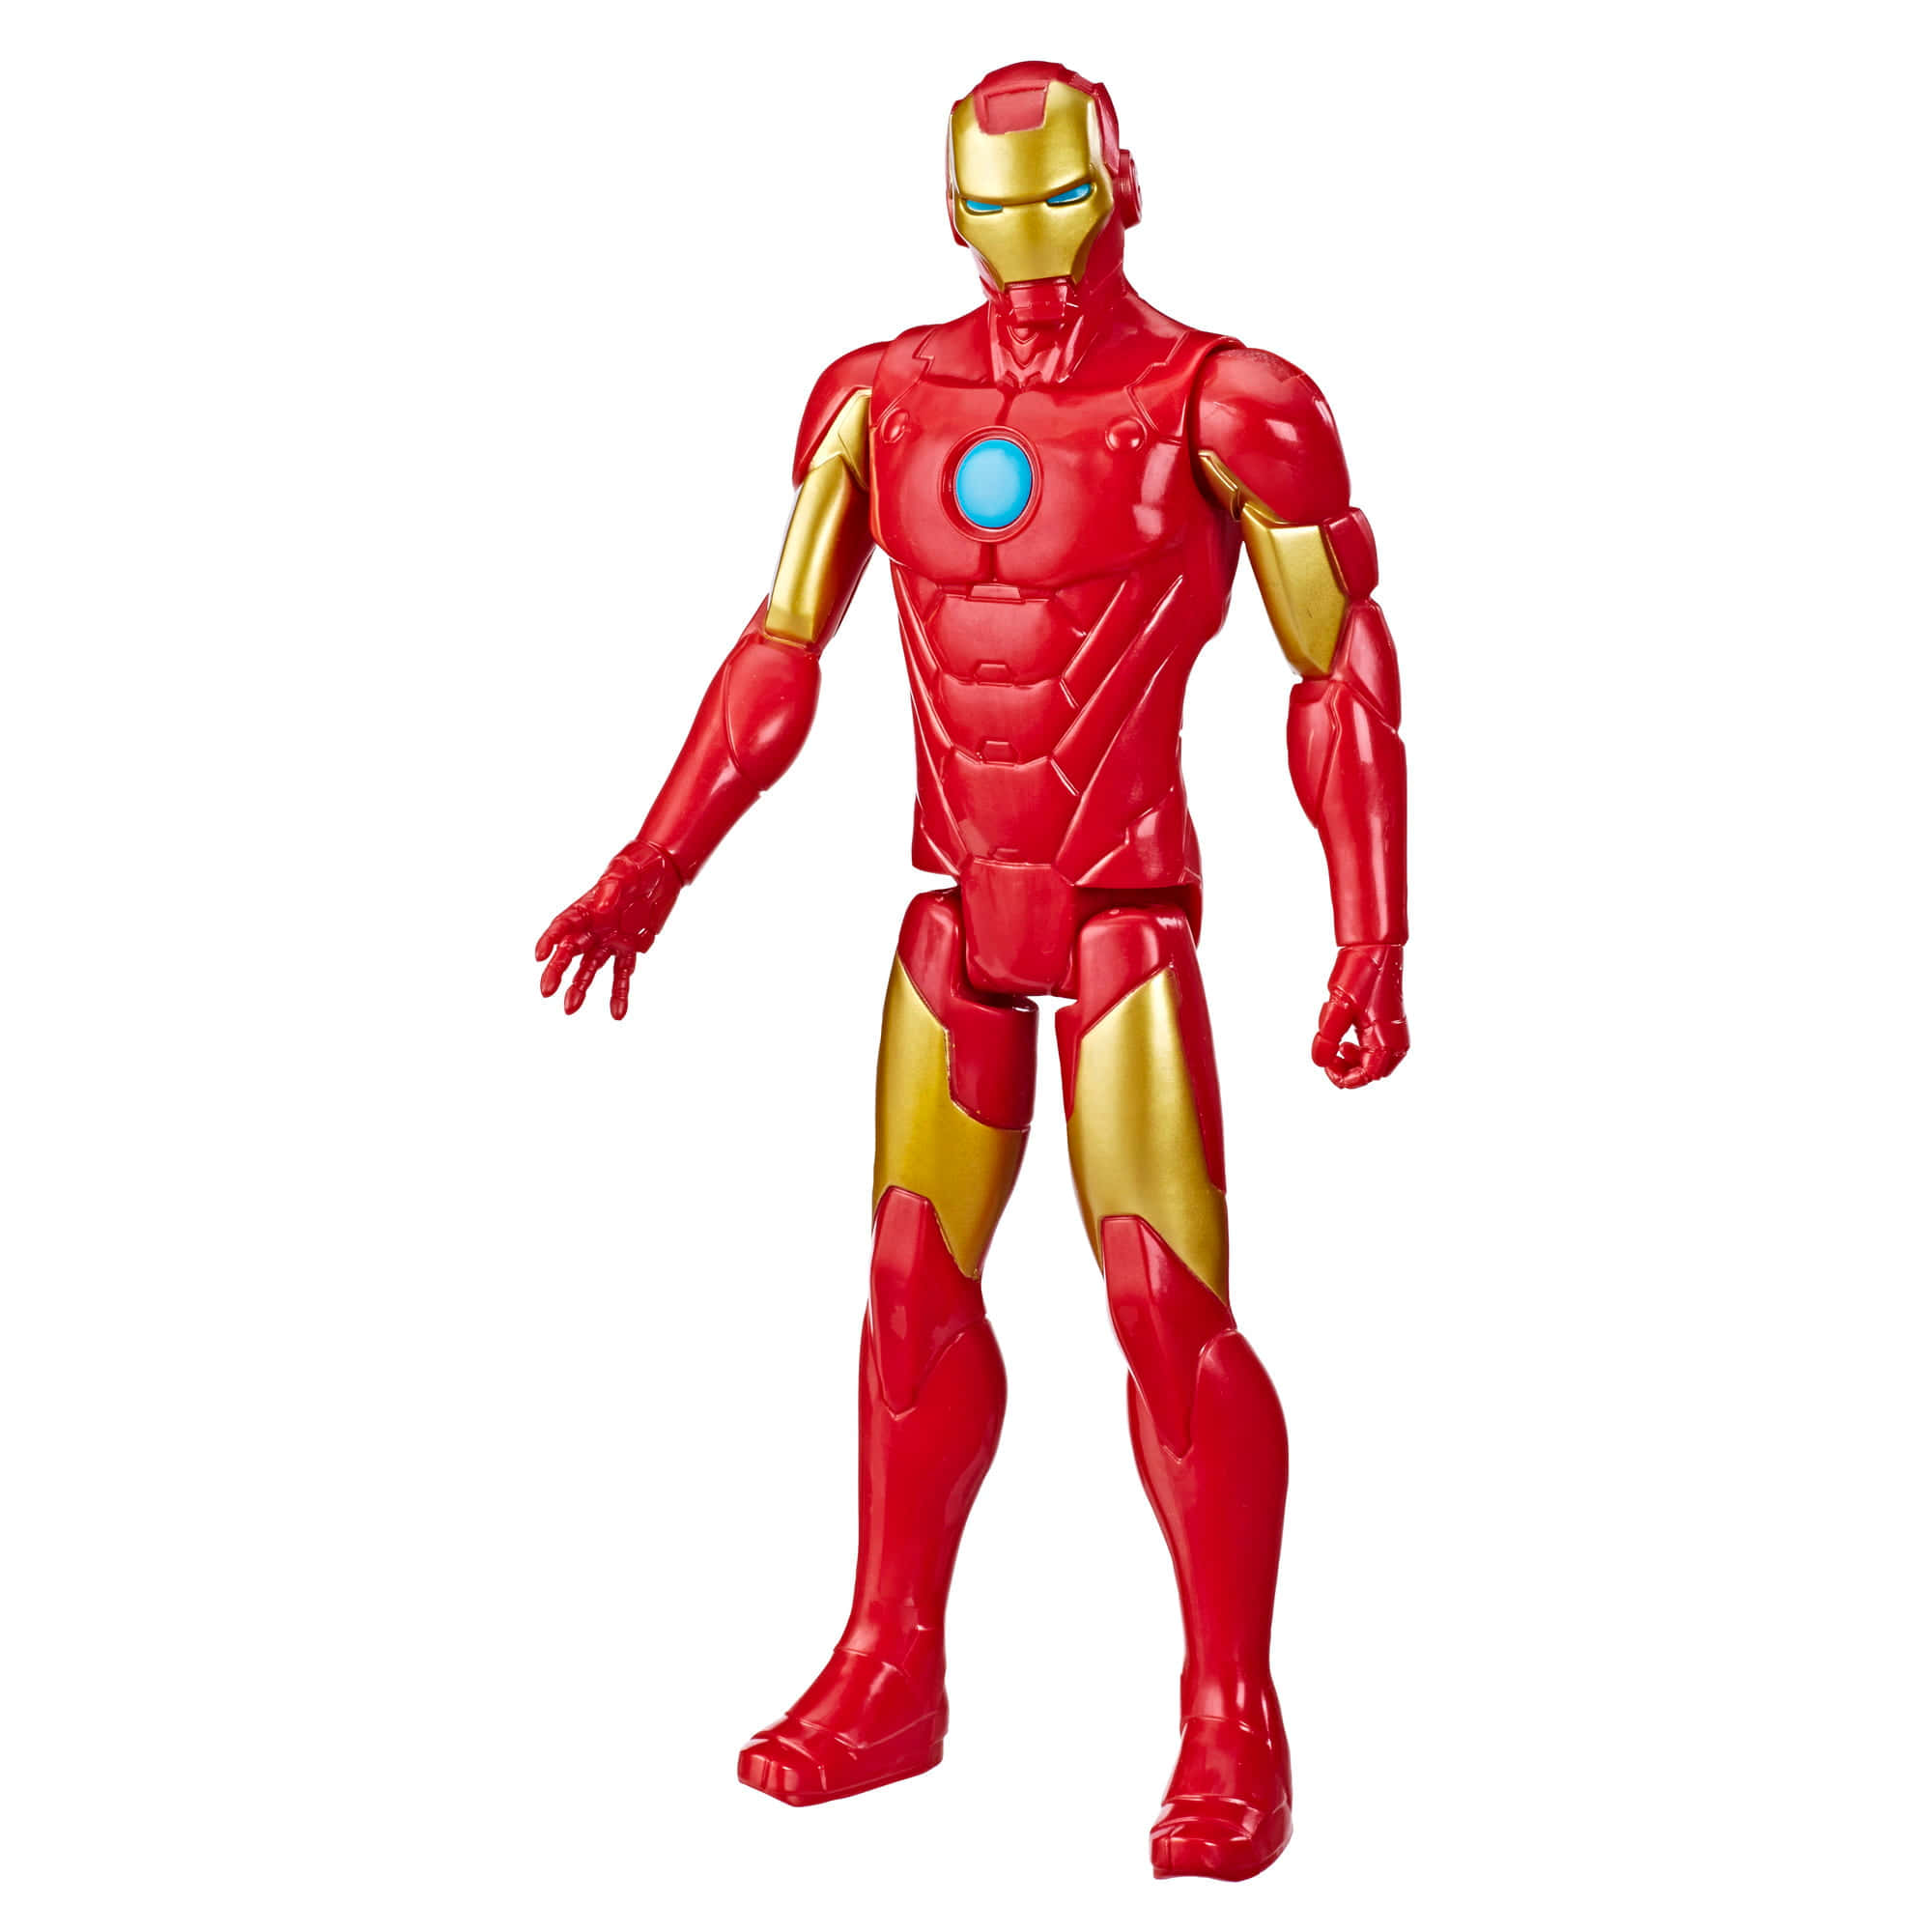 Potenciala Imaginación De Tu Hijo Con Las Figuras De Acción De Iron Man. Fondo de pantalla